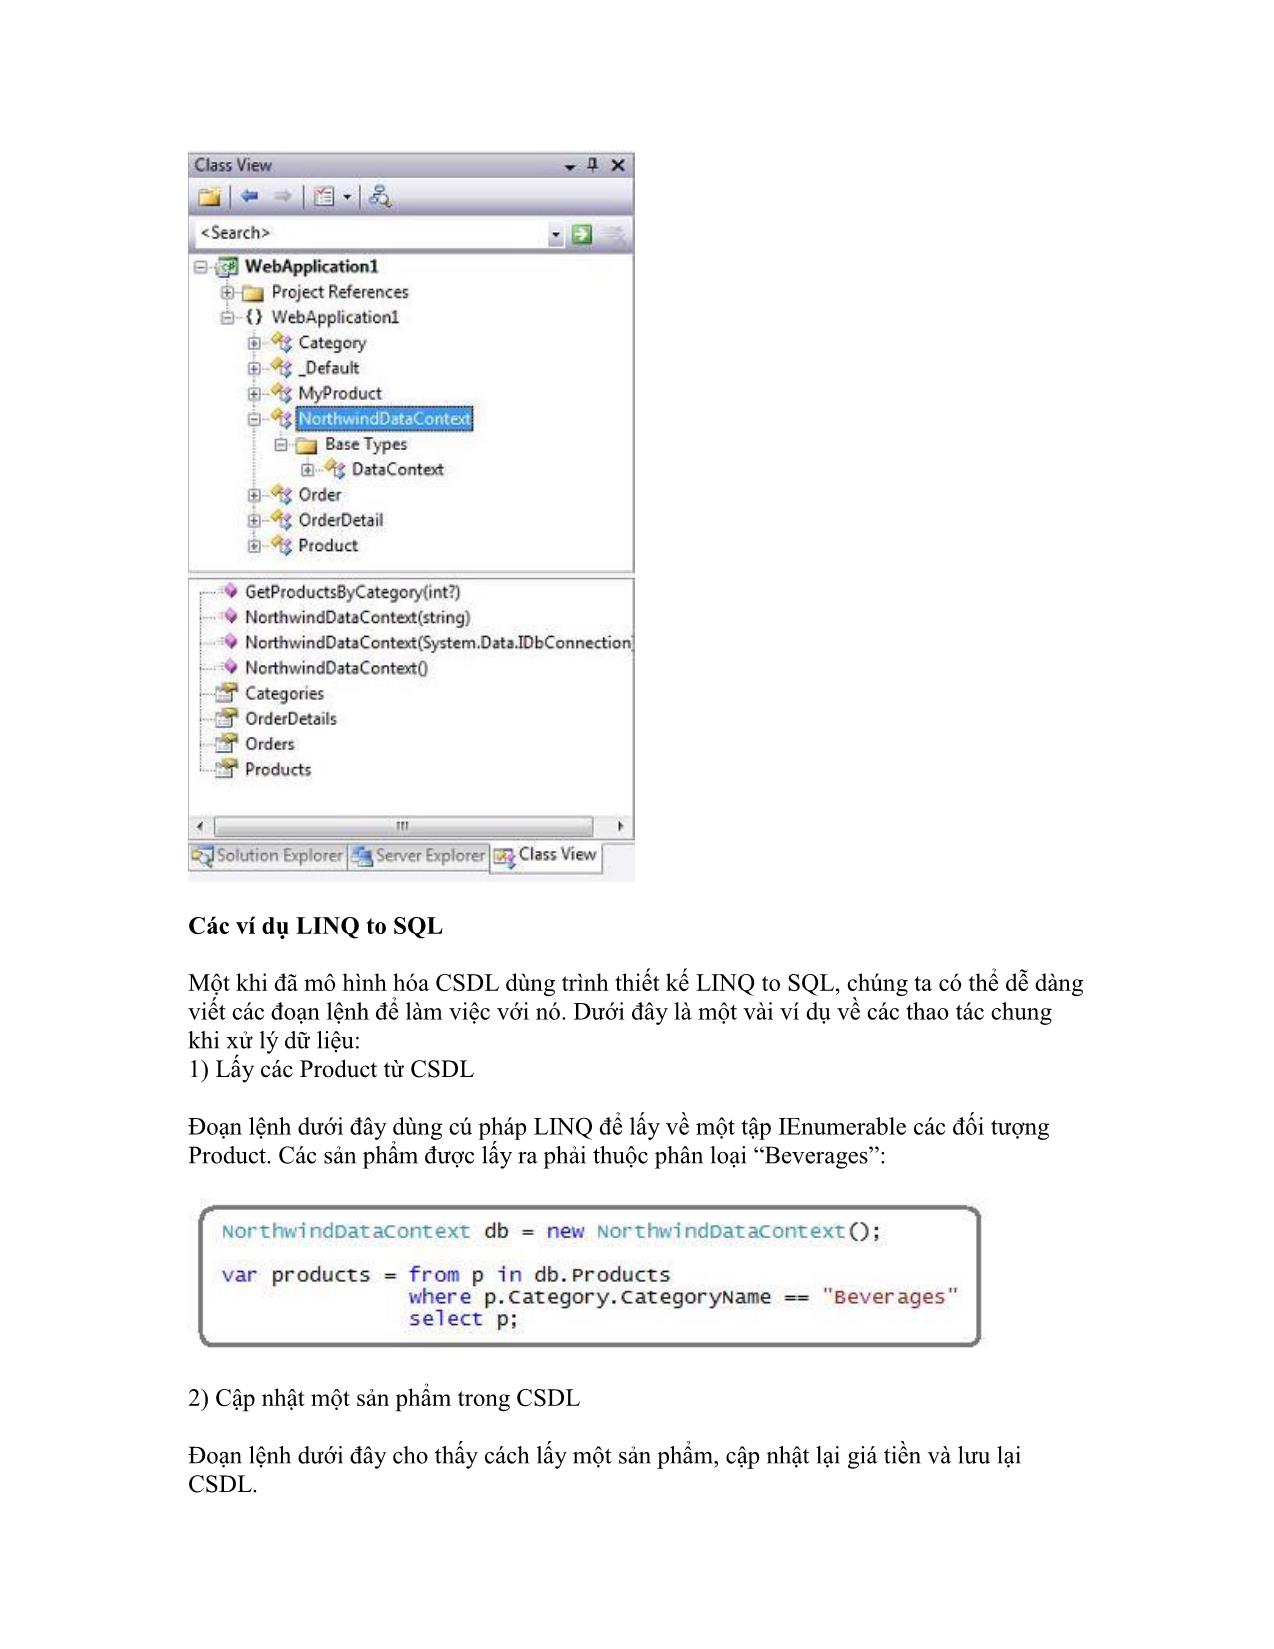 Sử dụng LINQ to SQL trang 3